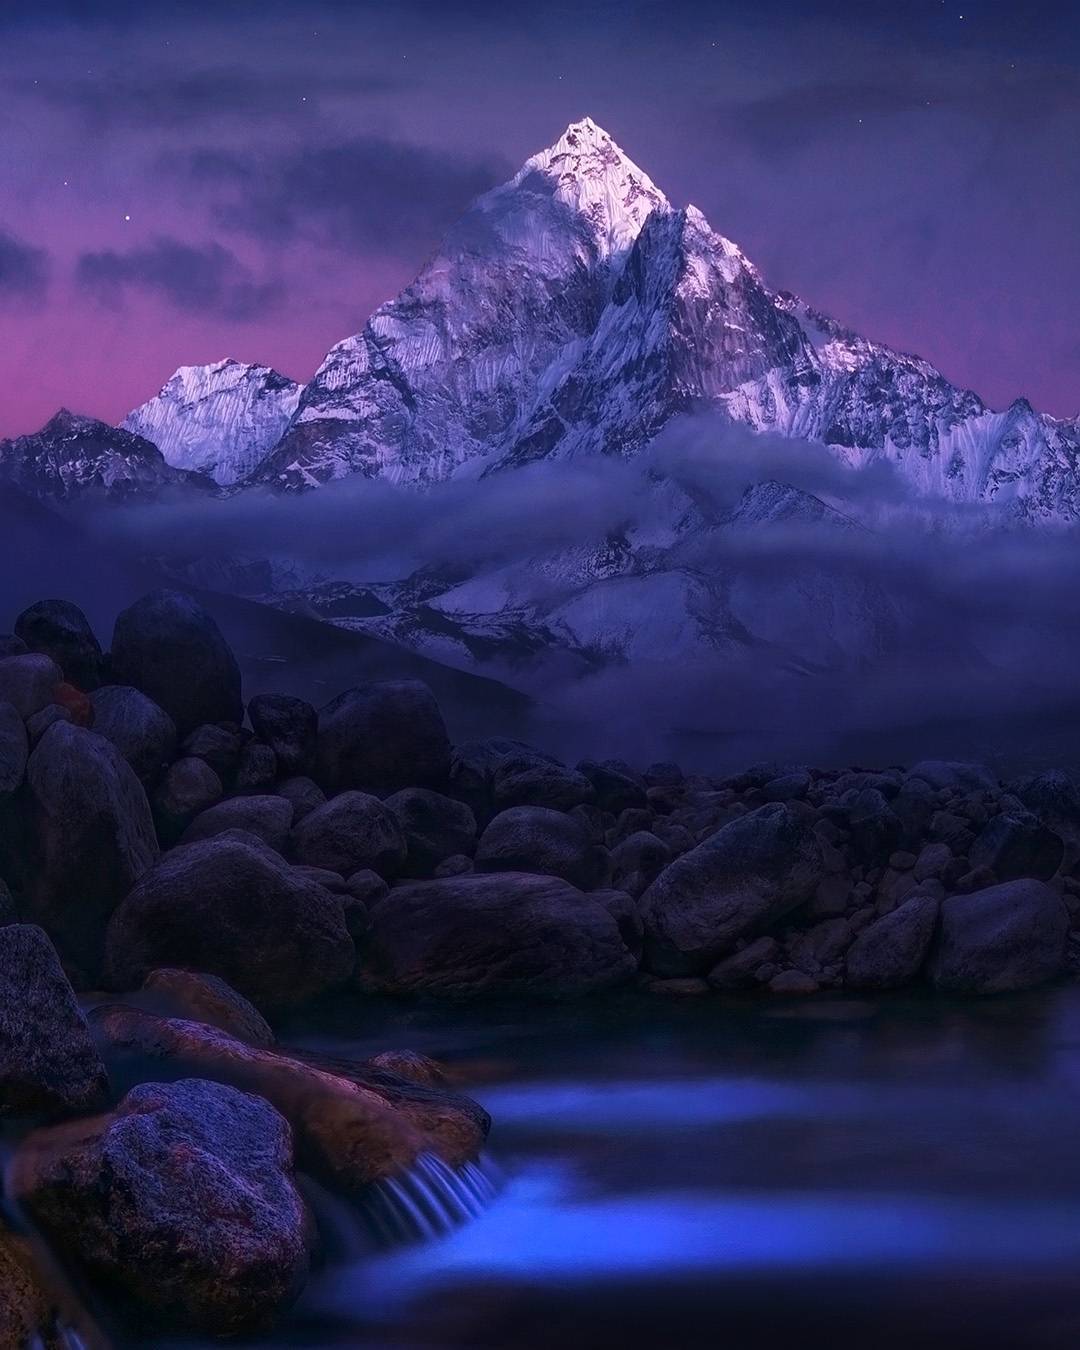  喜马拉雅山脉的山峰，来自摄影师Max Rive。 